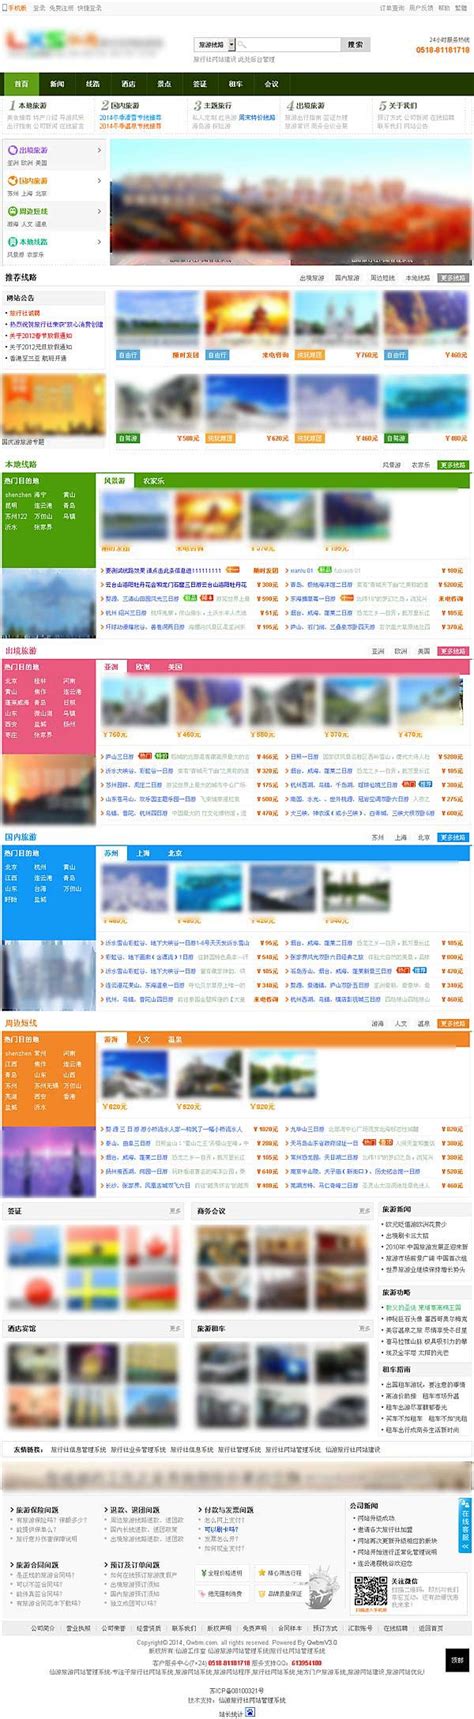 系统演示--旅行社网站建设|旅行社网站设计|旅行社网站定制|旅行社网站开发--仙游旅行社网站系统